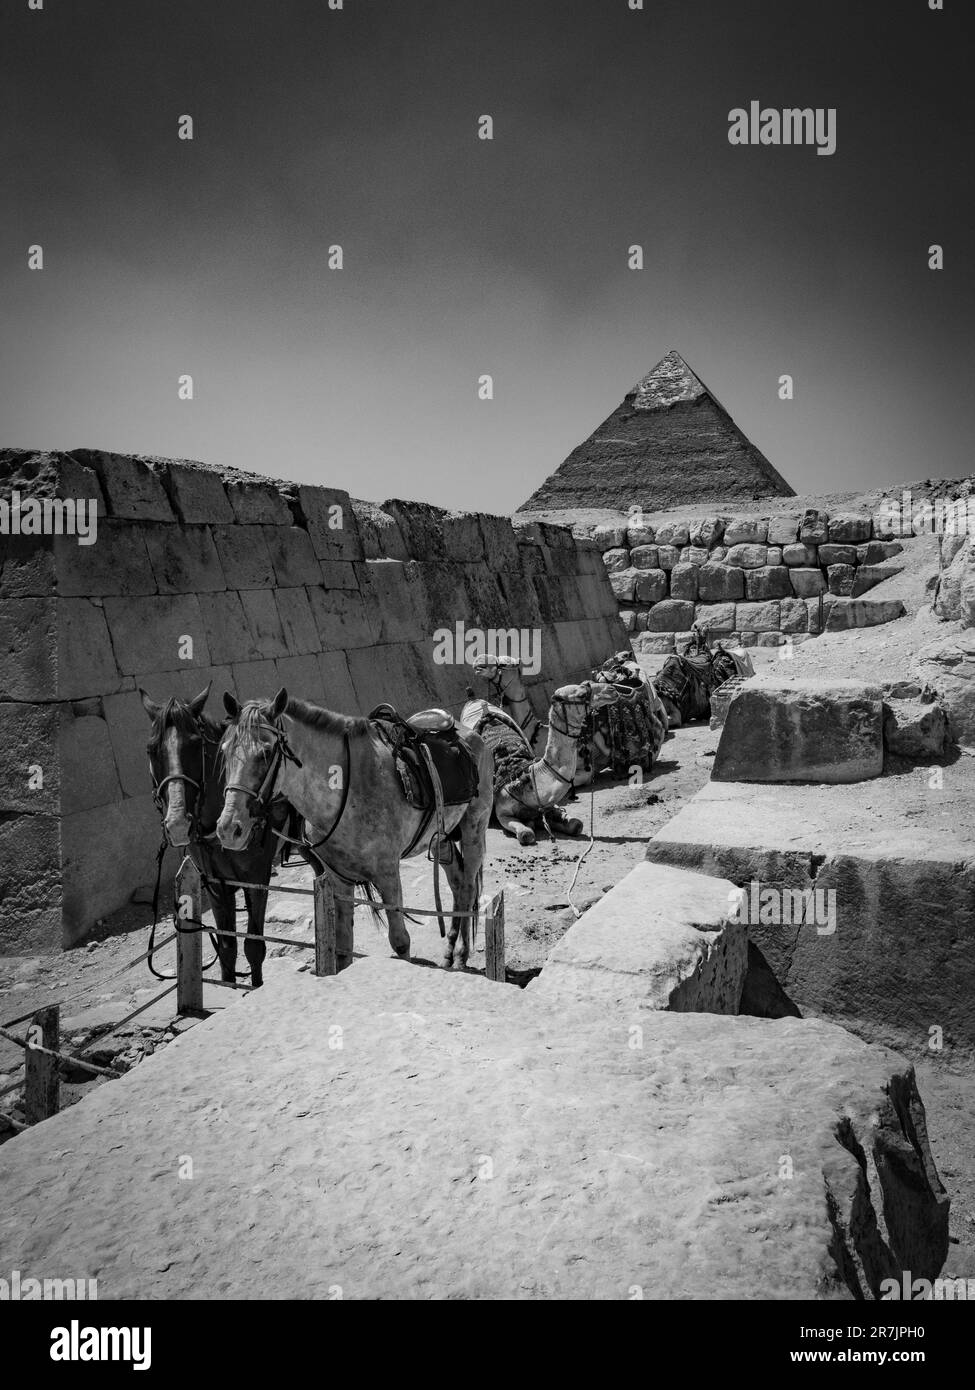 Ägyptens berühmte Pyramiden und antike Geschichte werden in Monoc zum Leben erweckt Stockfoto